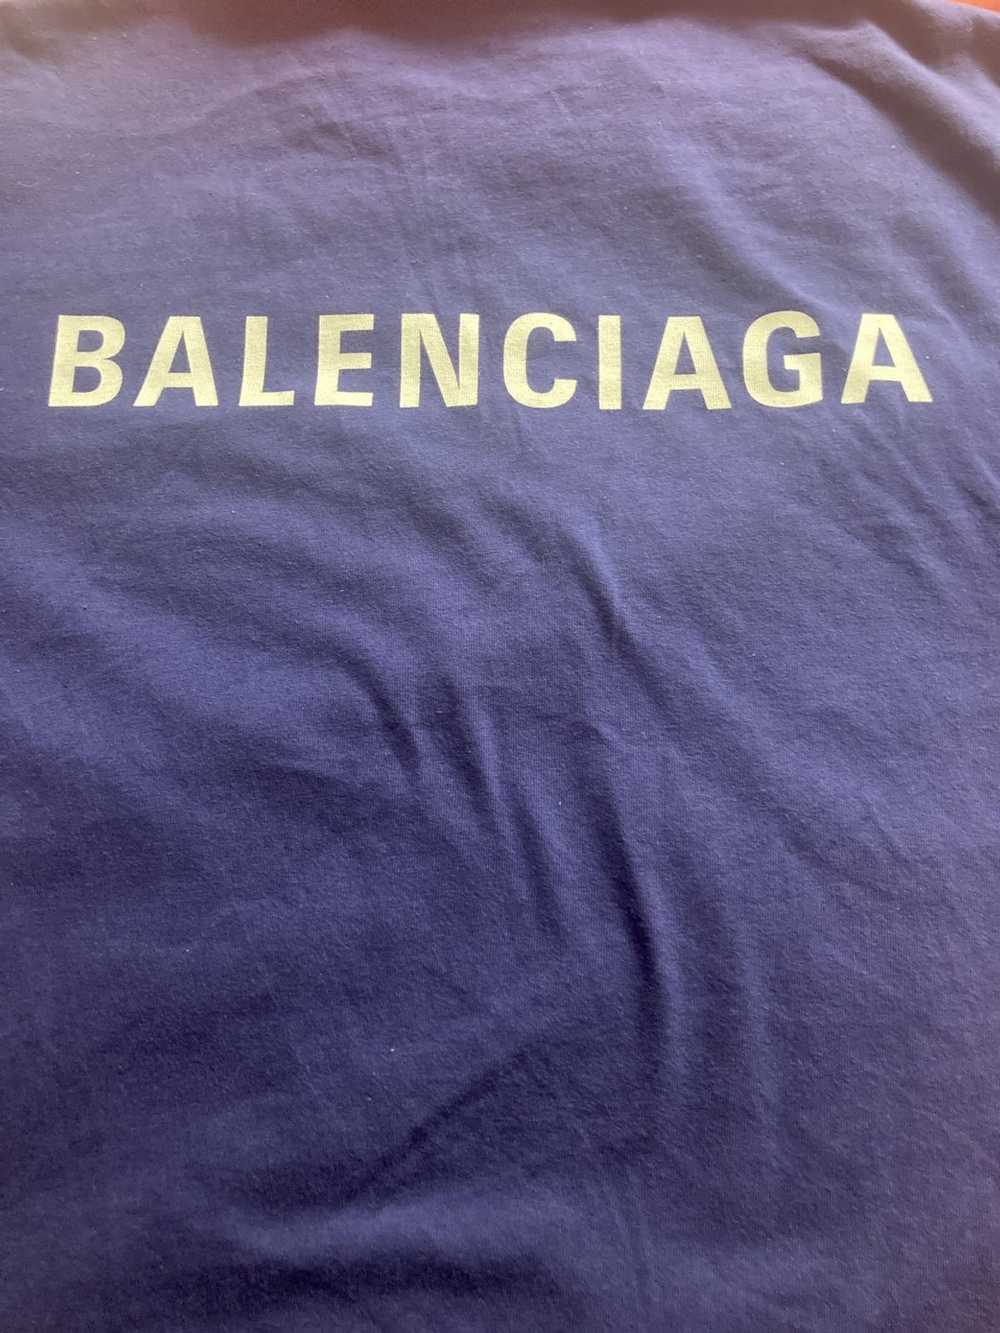 Balenciaga Balenciaga small logo oversized T-shirt - image 3